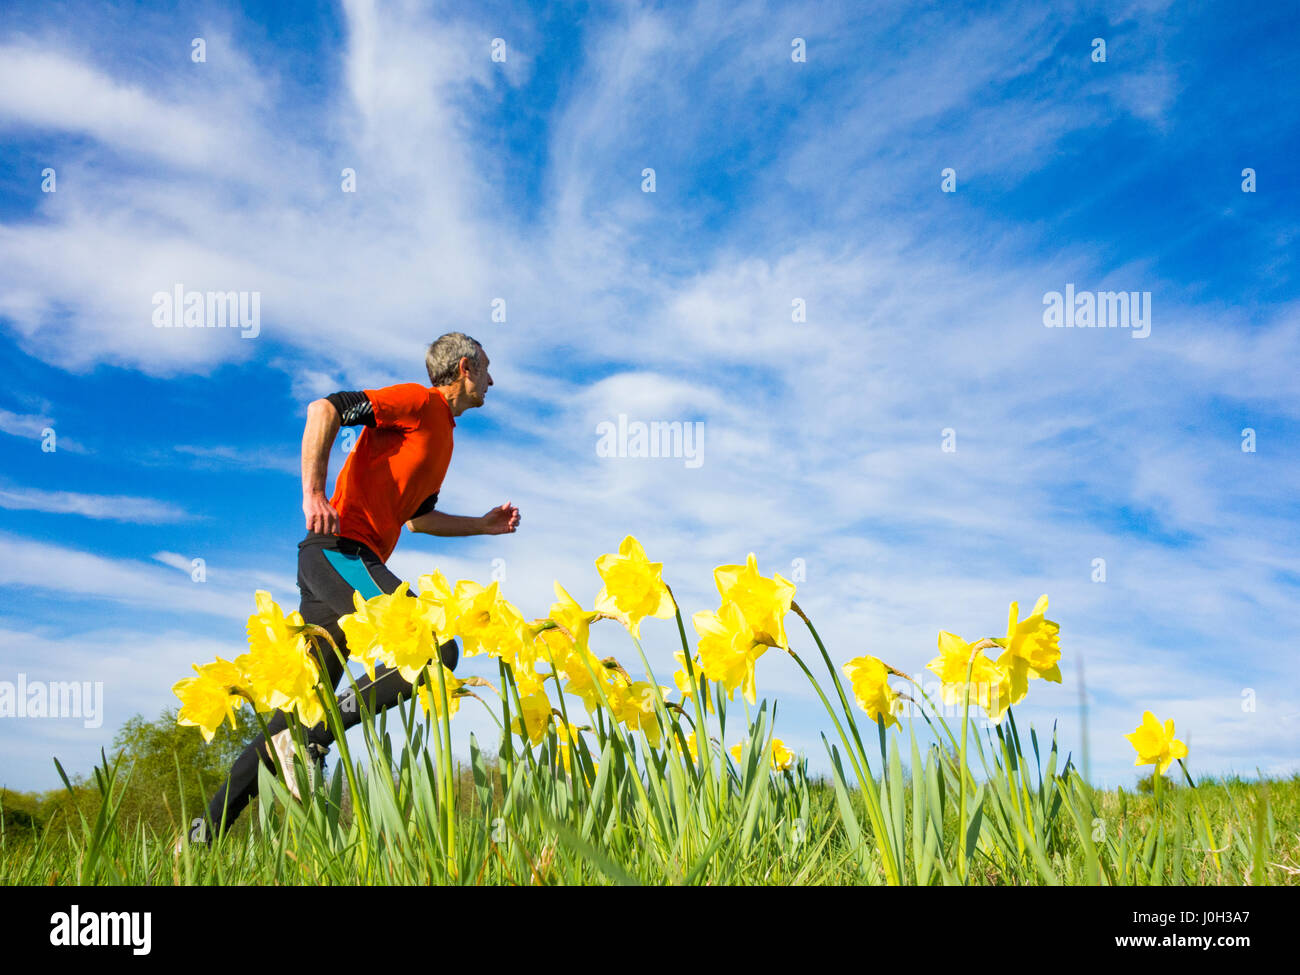 Vue à angle bas d'un jogging mûr passant devant les jonquilles sur le sentier dans la prairie de fleurs sauvages. ROYAUME-UNI Banque D'Images